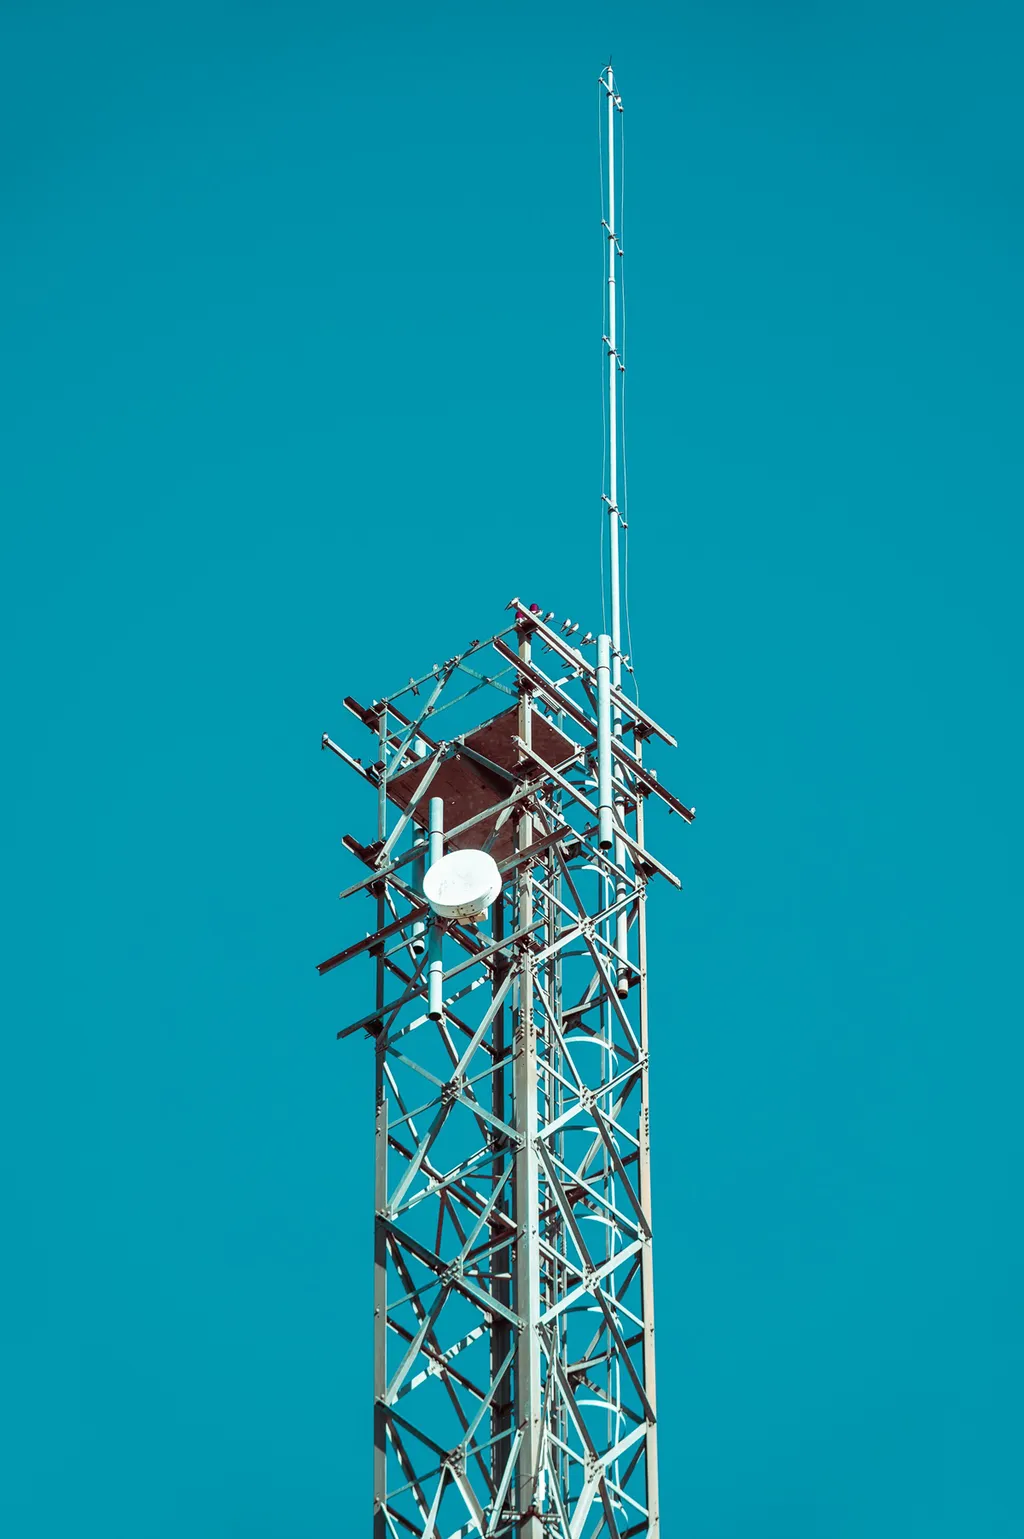 Operadoras terão que instalar dezenas de antenas 5G para cobrir cada cidade com abrangência (Imagem: Reprodução/Pixabay/Caio)